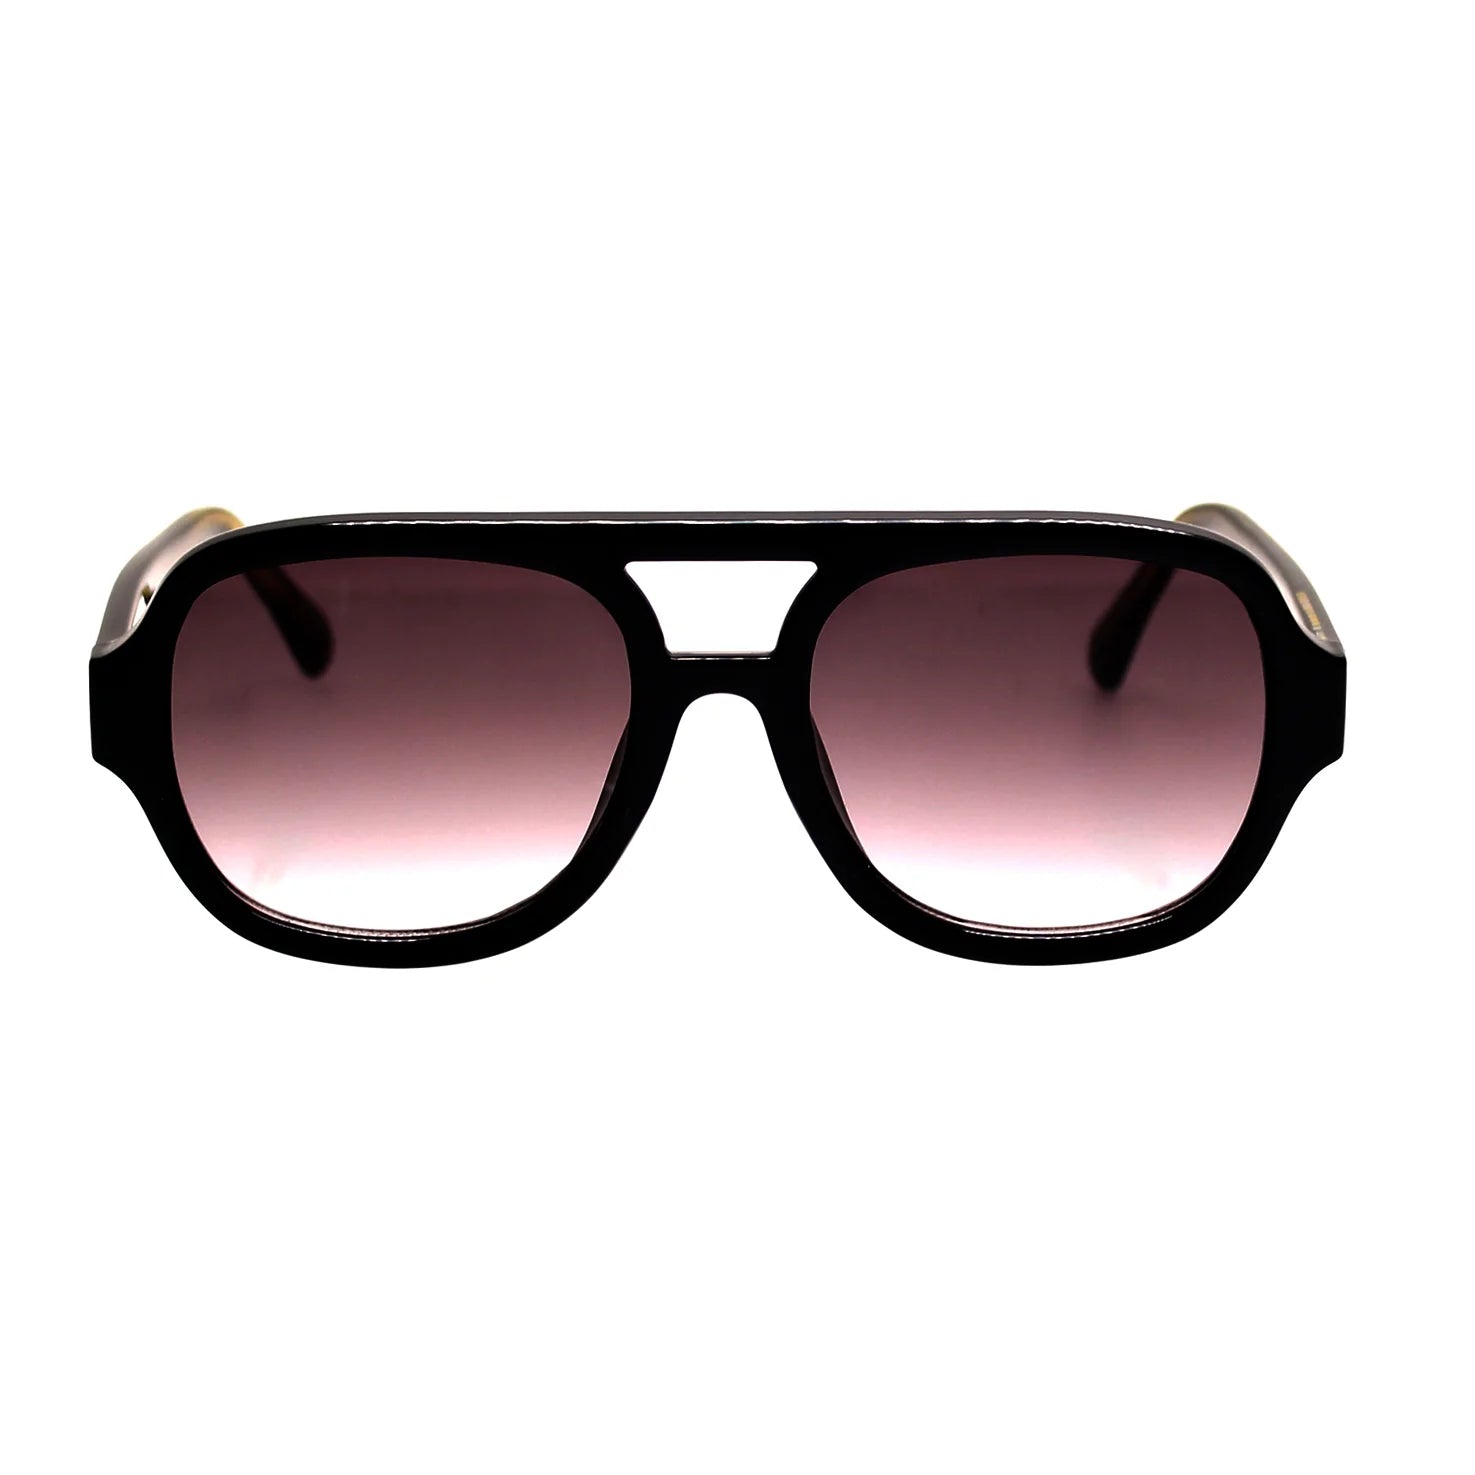 The Special Sunglasses - Beechworth Emporium